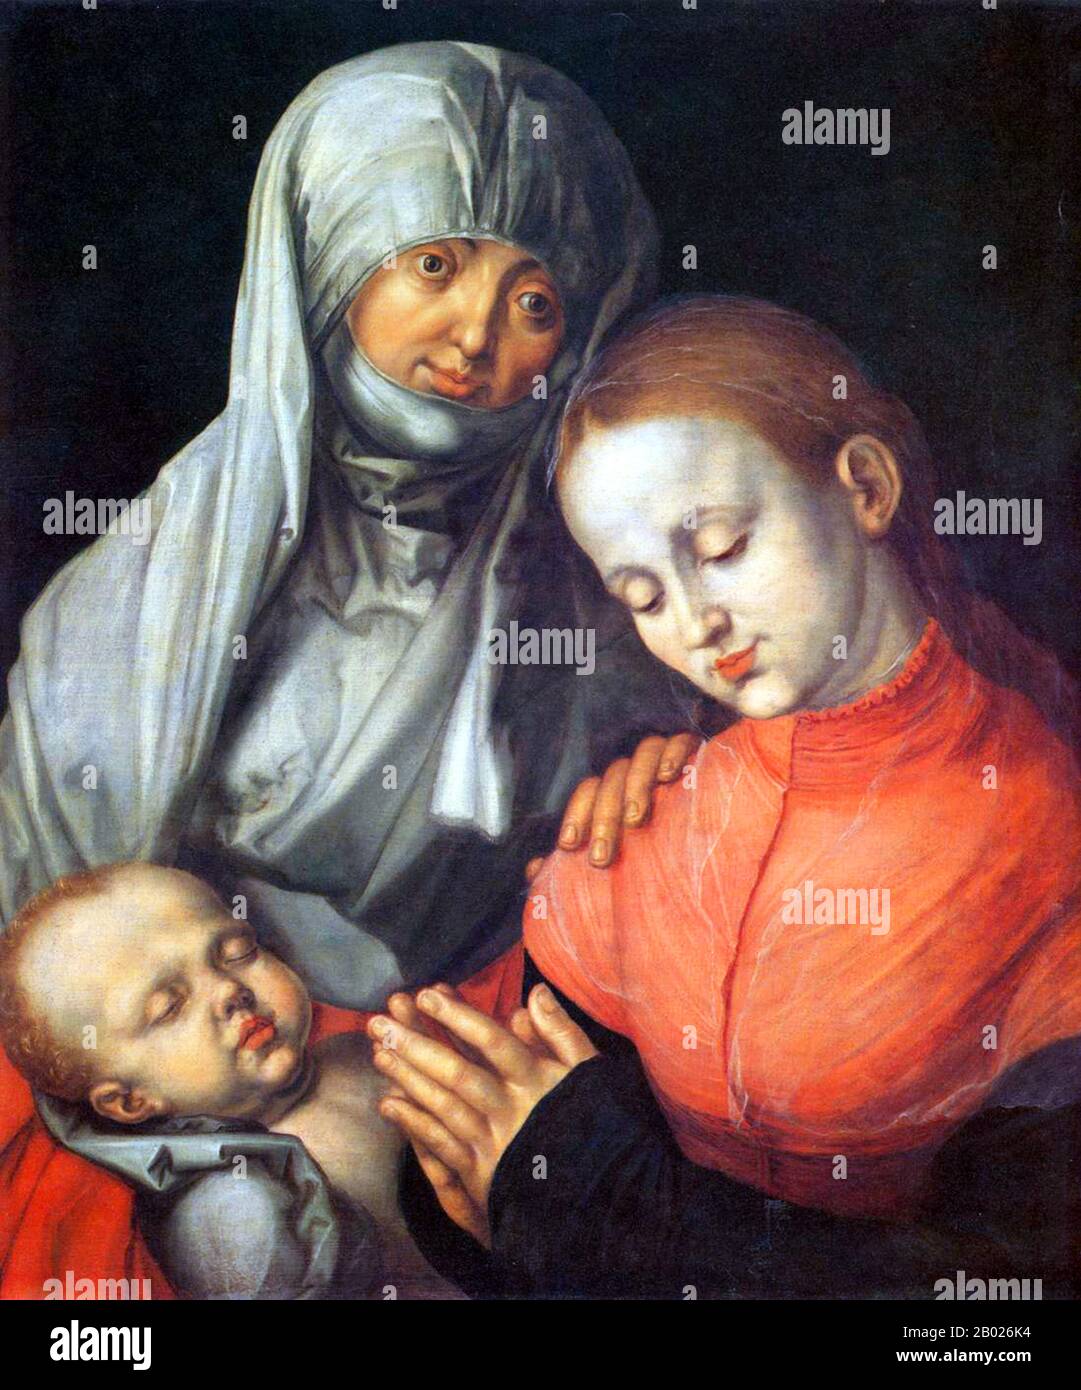 Albrecht Dürer (allemand : 21 mai 1471 – 6 avril 1528) était peintre, graveur, graveur, mathématicien et théoricien allemand de Nuremberg. Ses boisés de haute qualité (aujourd'hui souvent appelés Meisterstiche ou "reproductions de maître") ont établi sa réputation et son influence à travers l'Europe quand il était encore dans ses années vingt, et il a été considéré comme le plus grand artiste de la Renaissance du Nord depuis. Son vaste corps de travaux comprend des altarpettes et des œuvres religieuses, de nombreux portraits et autoportraits et des gravures en cuivre. Les boisés, tels que la série Apocalypse (1498), retai Banque D'Images